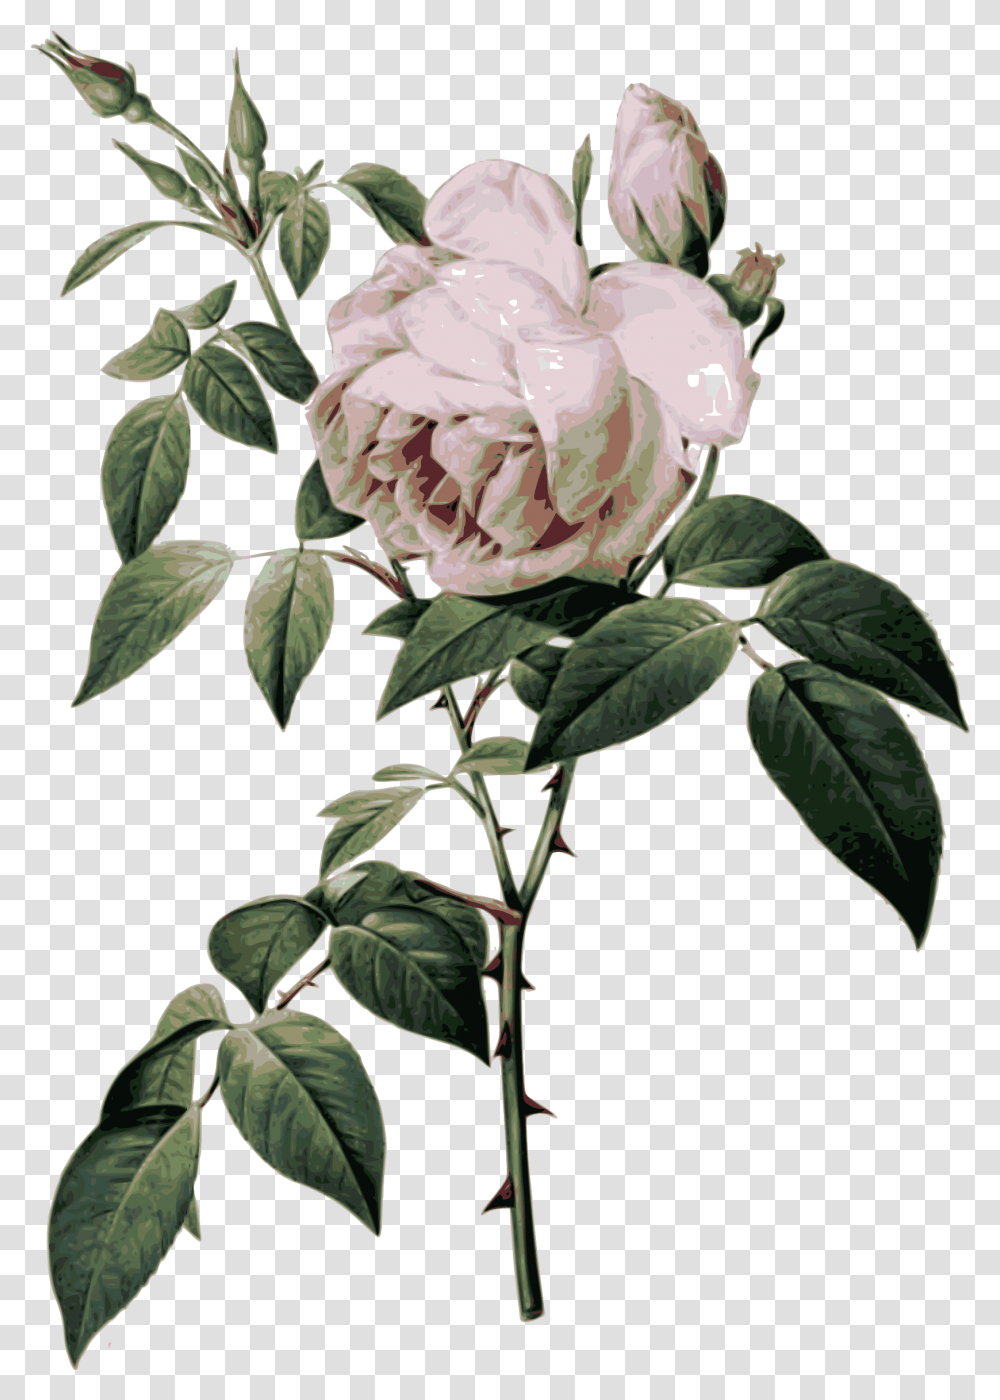 Rose Botanical Illustration Download Rose Botanical Chart, Plant, Flower, Blossom, Peony Transparent Png